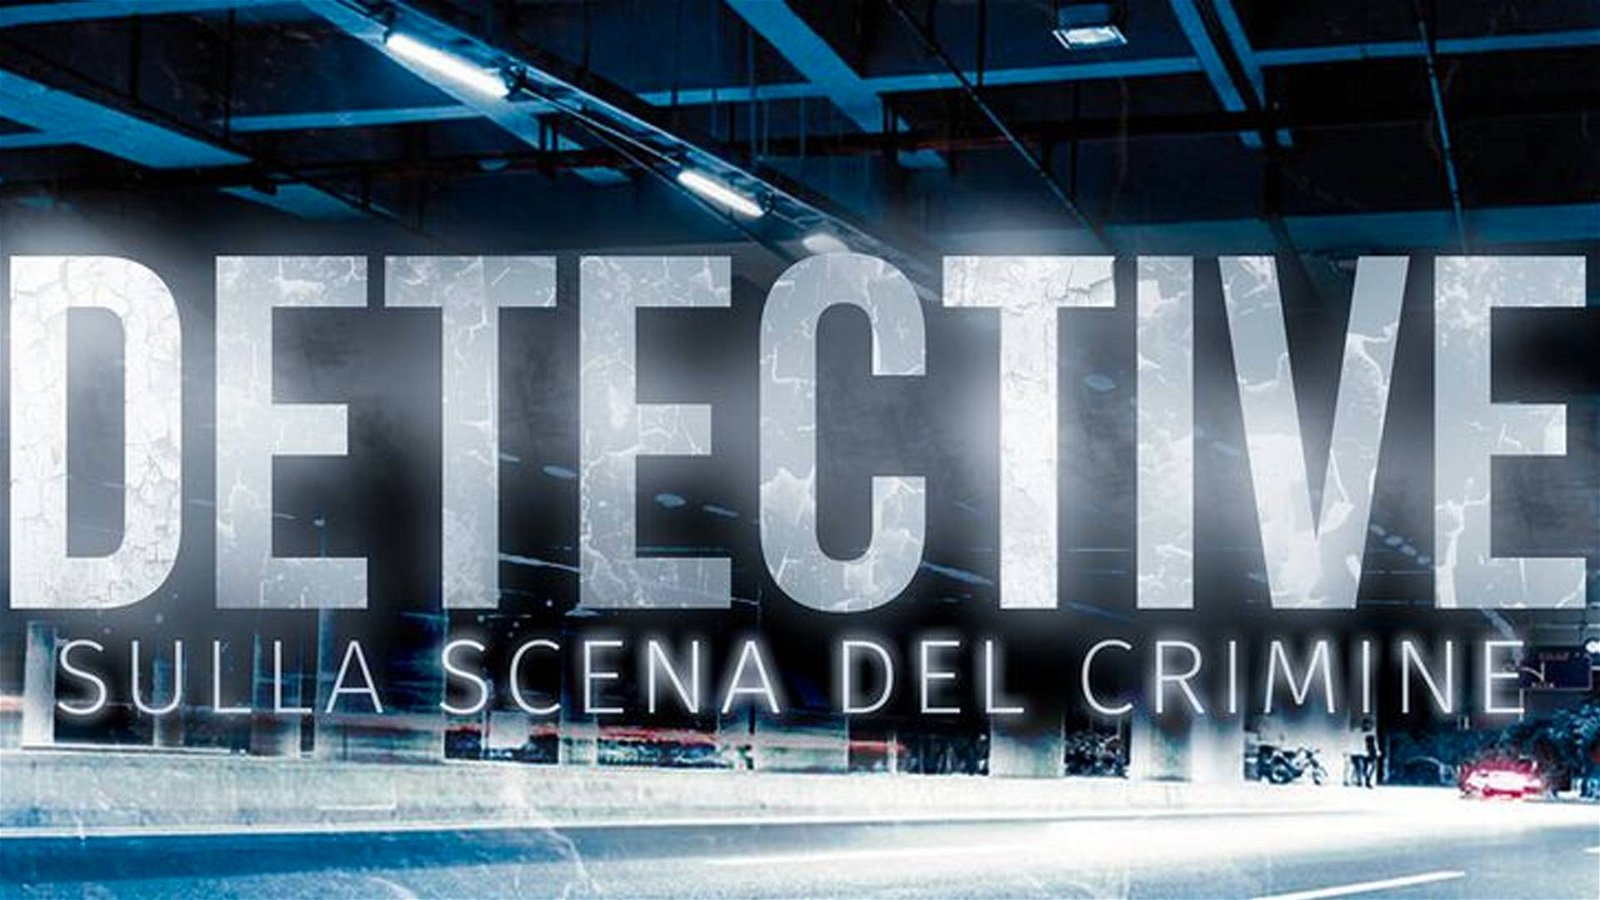 Immagine di Detective - Sulla scena del crimine: recensione, una crime story davvero coinvolgente